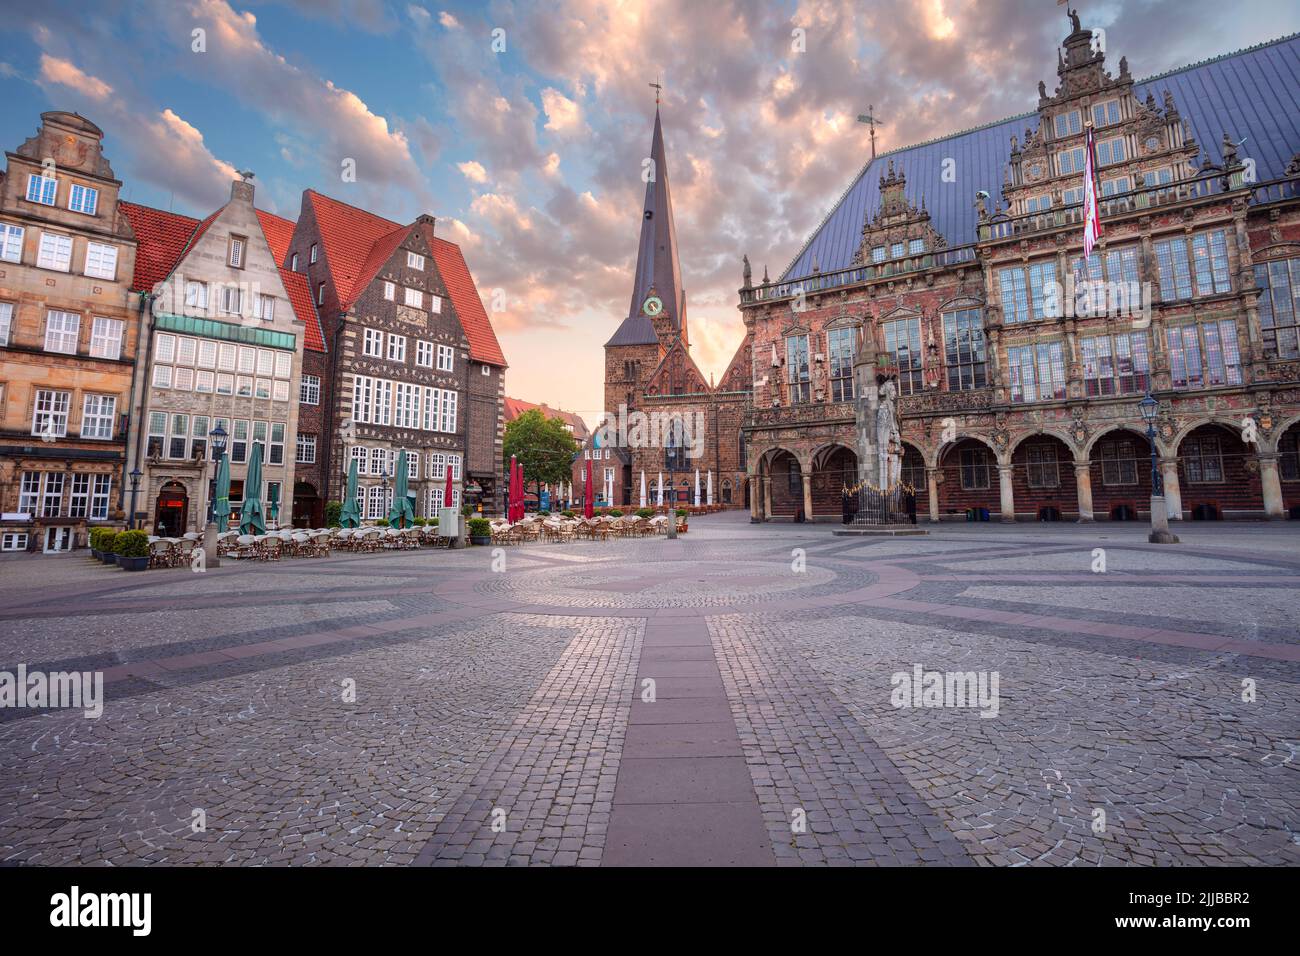 Bremen, Alemania. Imagen del paisaje urbano de la ciudad hanseática de Bremen, Alemania, con la histórica plaza del mercado y el ayuntamiento al amanecer en verano. Foto de stock